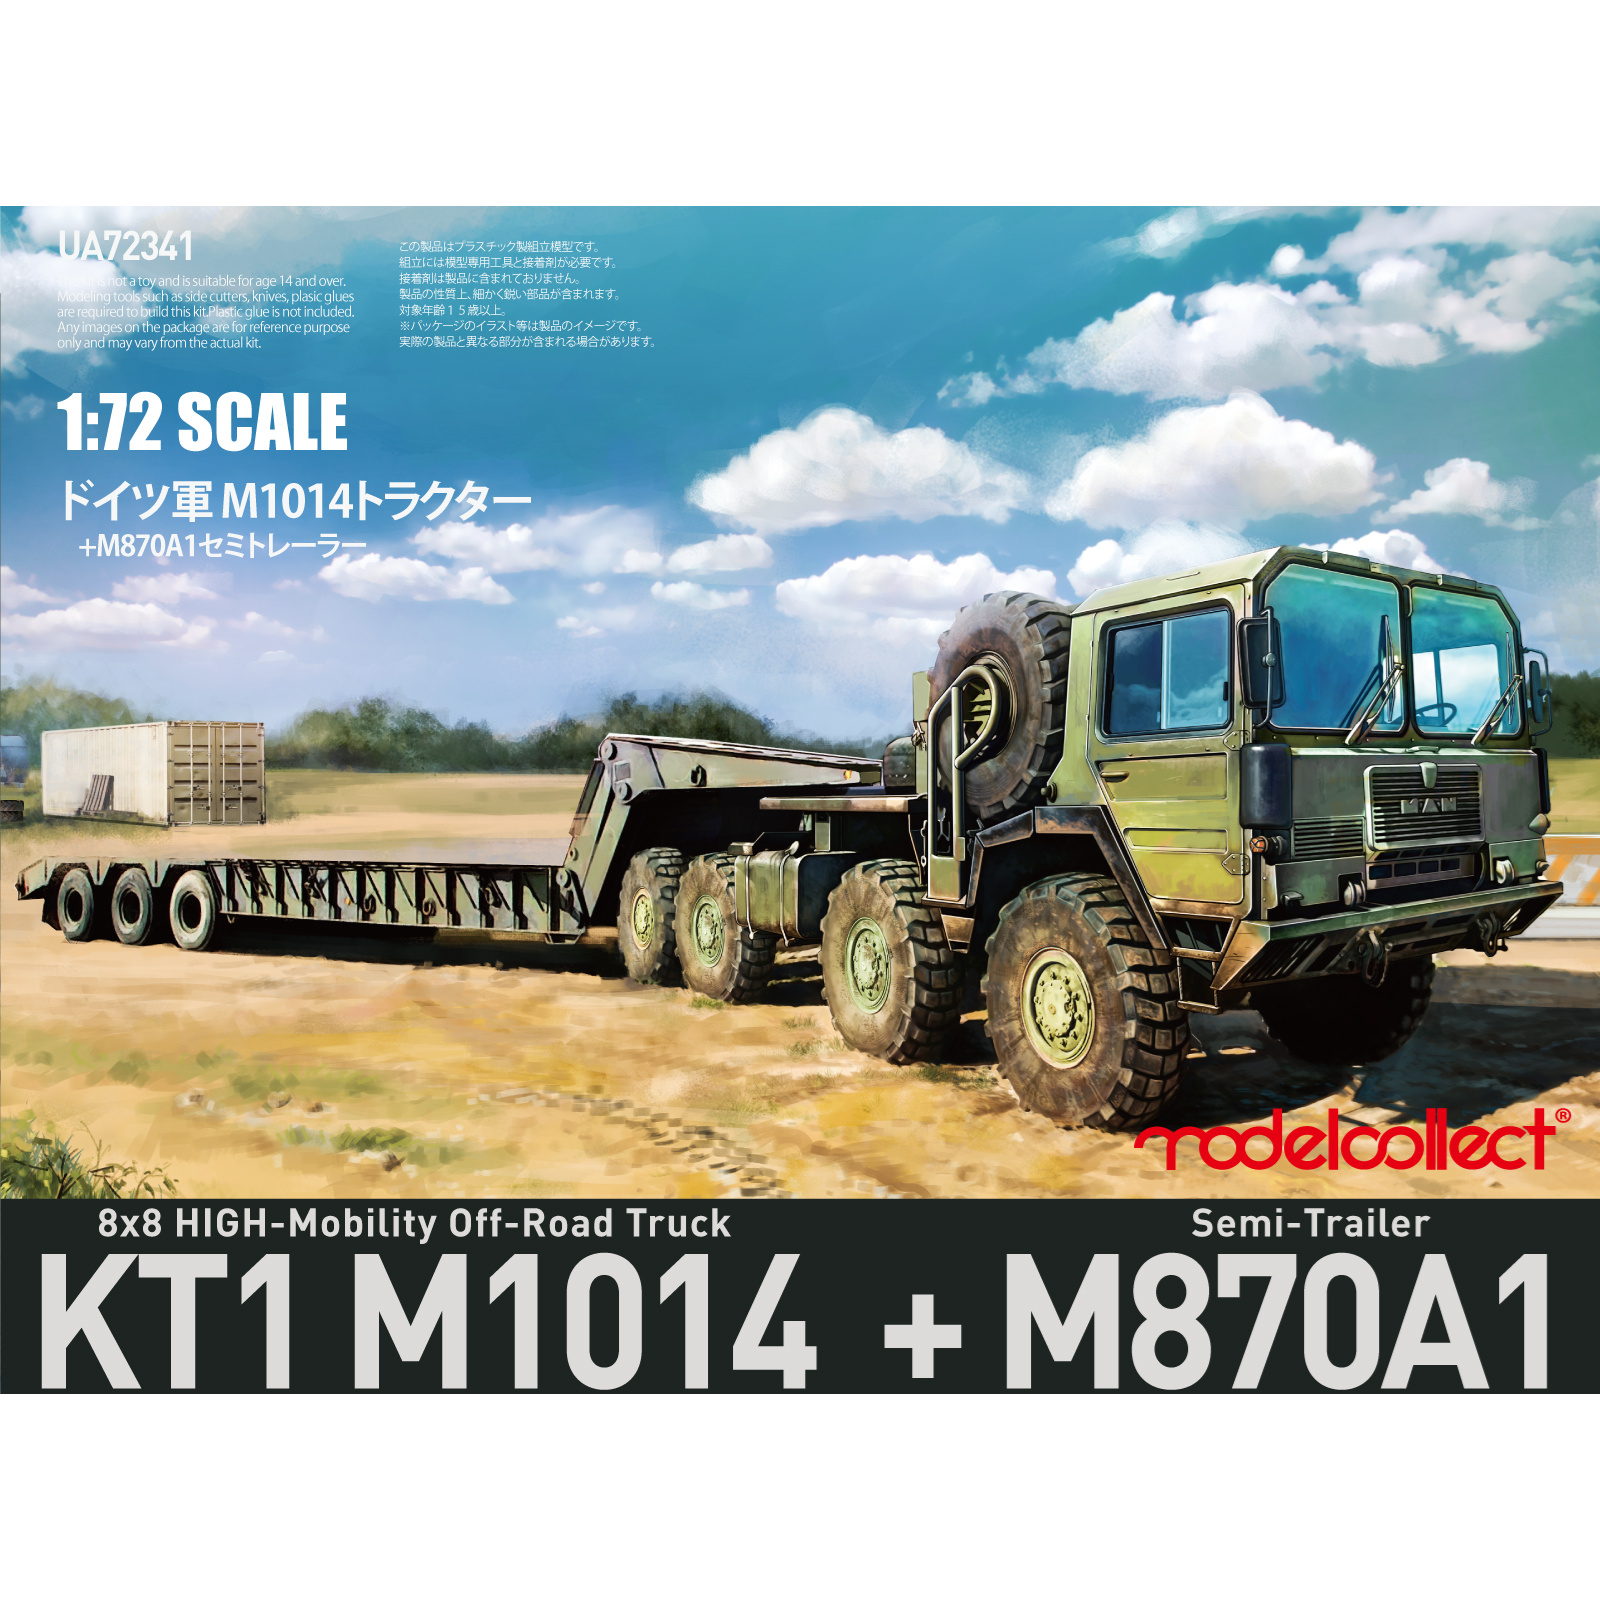 UA72341 Modelcollect 1/72 Немецкий высокомобильный внедорожный грузовик MAN KAT1M1014 8*8 с полуприцепом M870A1